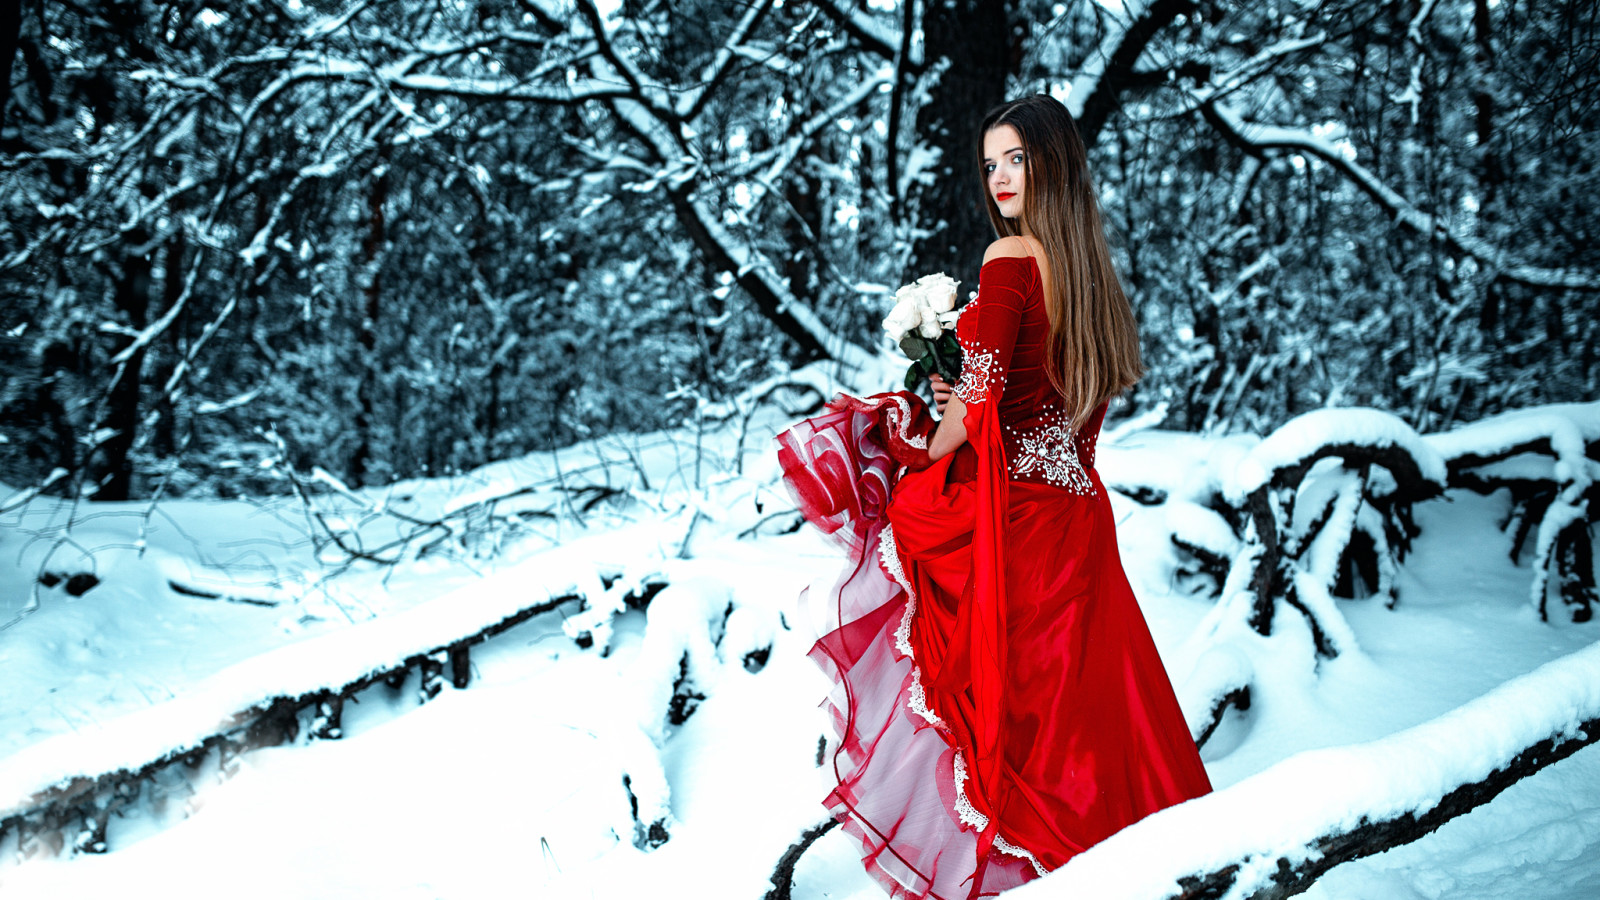 눈, 숲, 소녀, 겨울, 장미, 꽃다발, 드레스, 빨간색으로